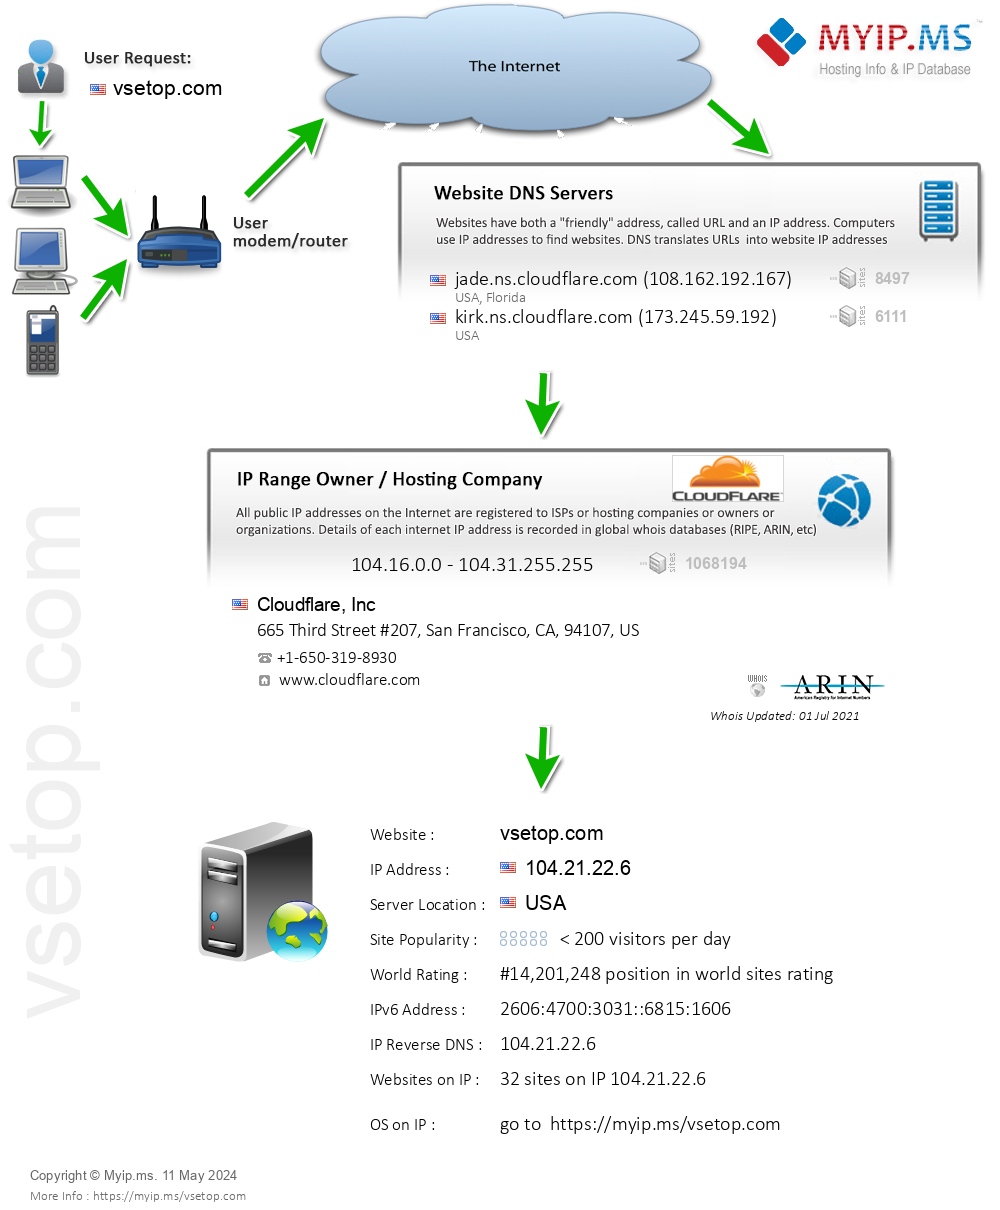 Vsetop.com - Website Hosting Visual IP Diagram